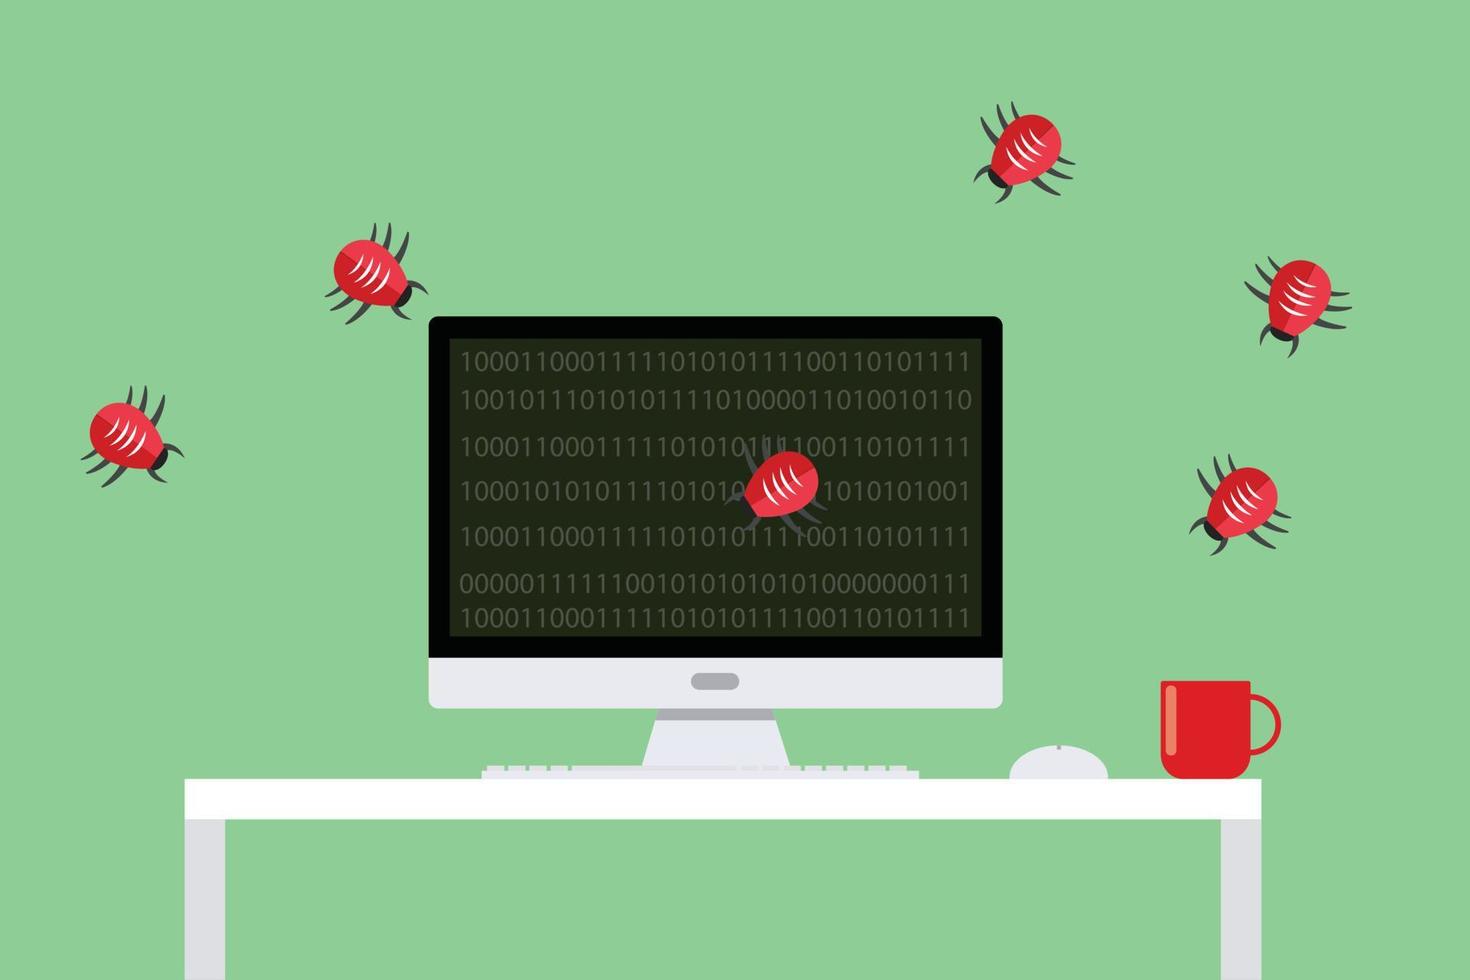 malware vírus ataque de segurança bugs de computador atacando vetor plano